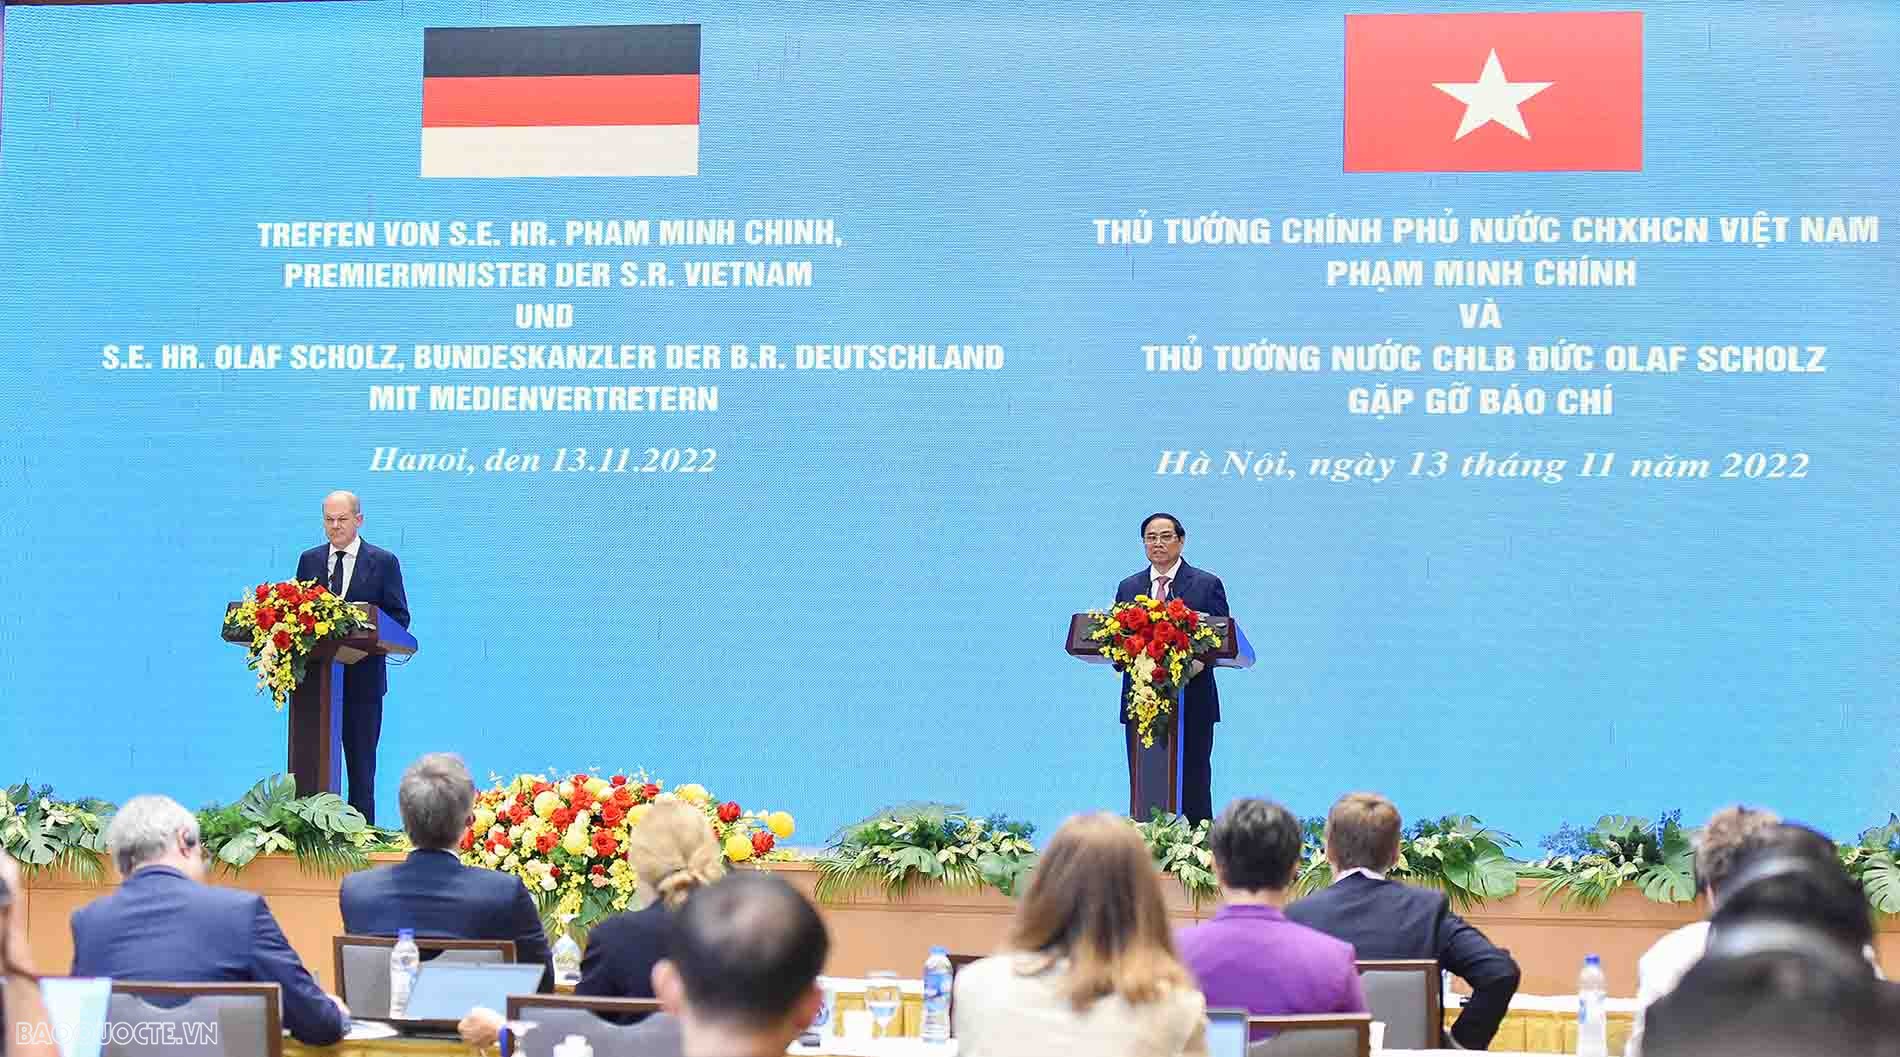 German Chancellor Olaf Scholz concludes Vietnam’s visit